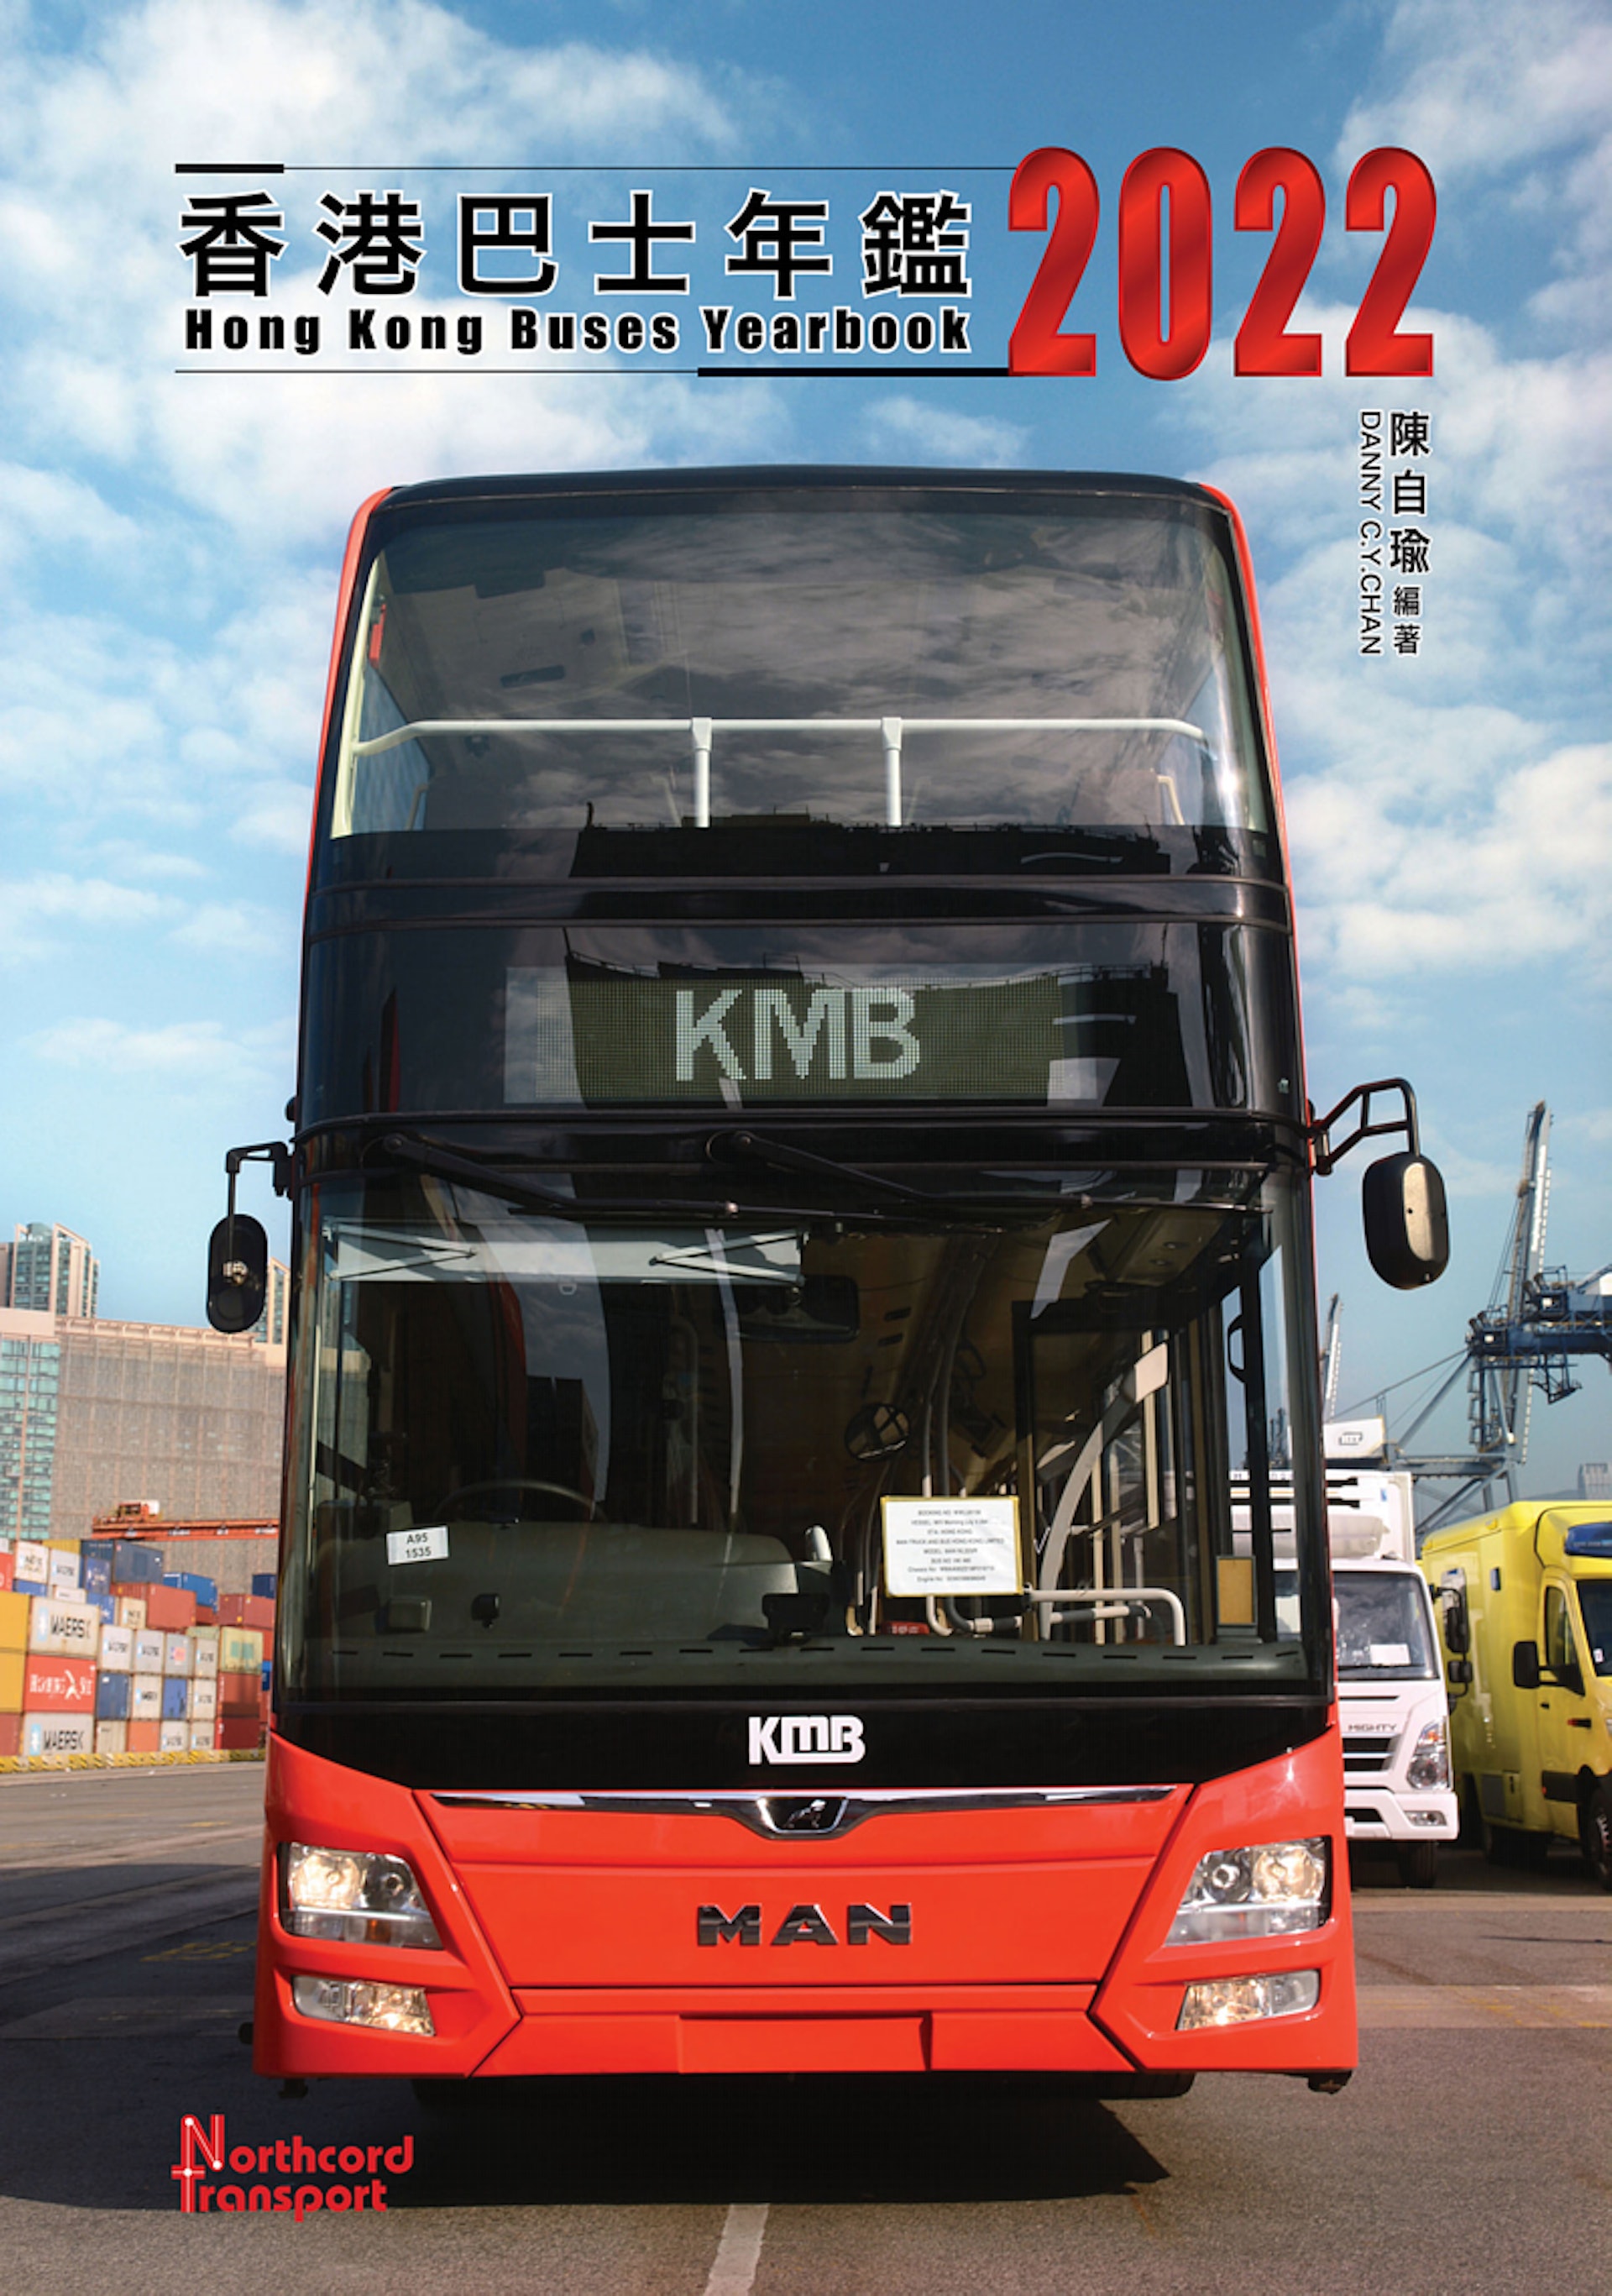 年鑑中註明，今次的巴士年鑑採用書套精裝，「『姜濤號』電車和紅色「狂獅」新巴士互相輝映，構建雙封面效果」。（網上圖片）